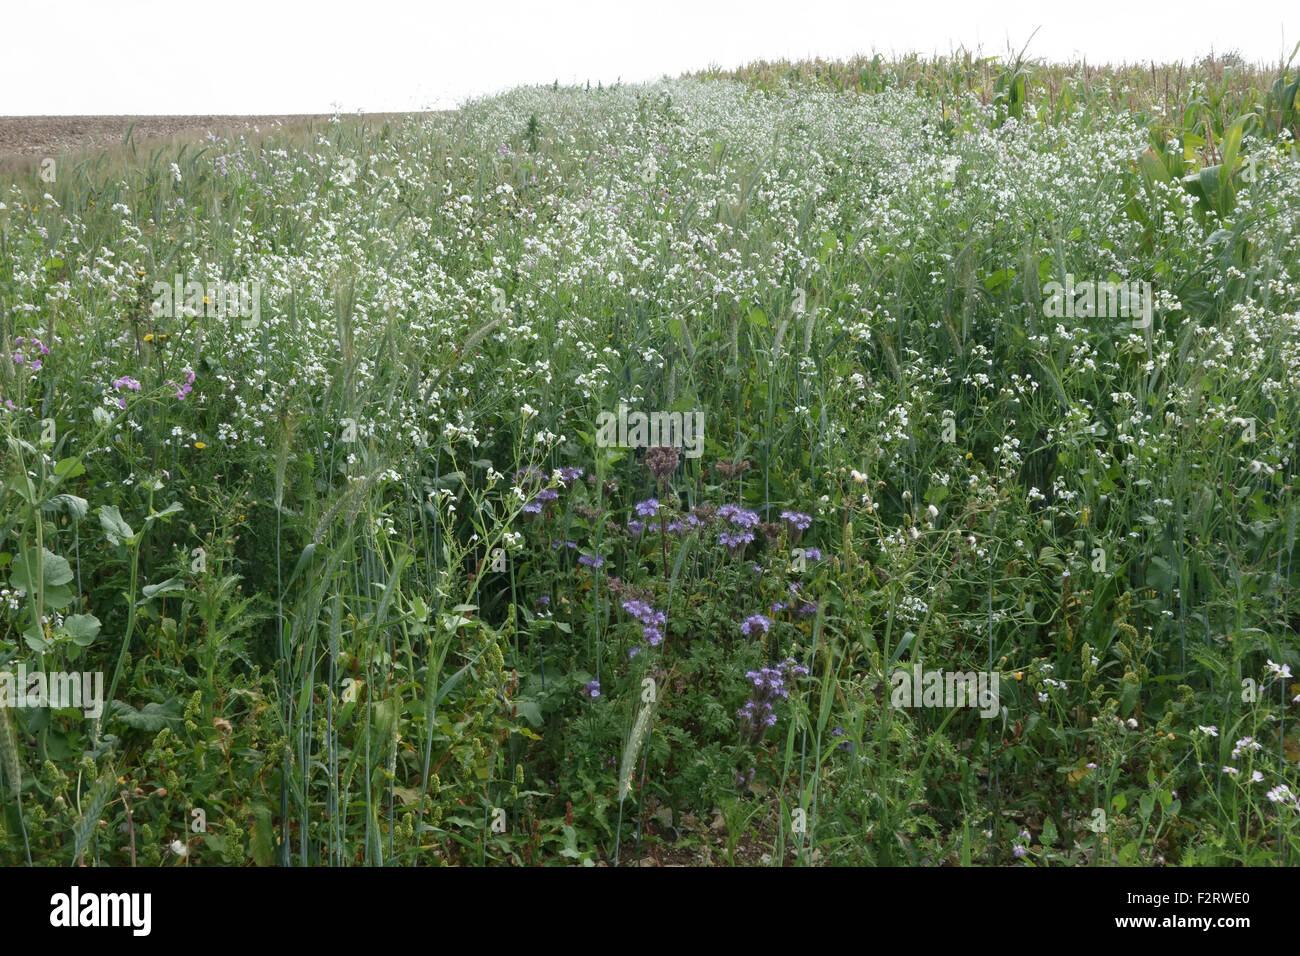 El Wildflower margen con plantas con flores para atraer insectos y fauna junto a cultivos agrícolas, Berkshire, Septiembre Foto de stock